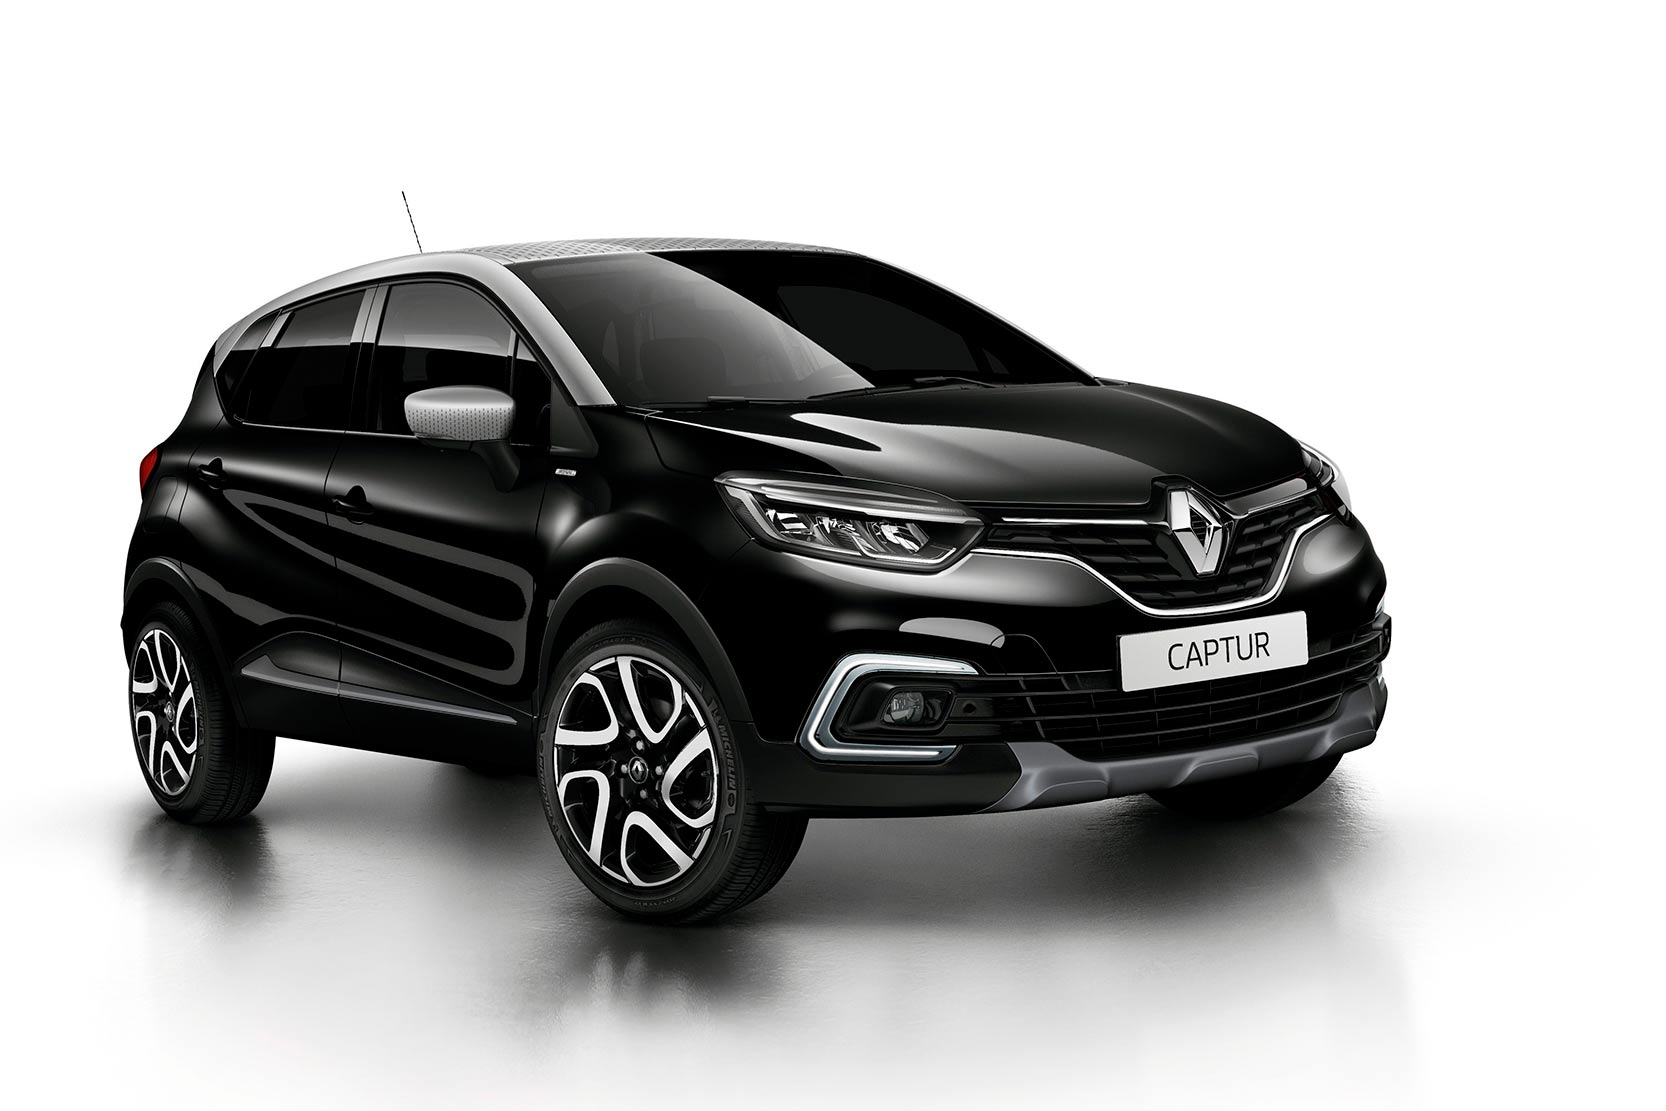 Image principale de l'actu: Renault captur iridium prix et equipements de la serie limitee 